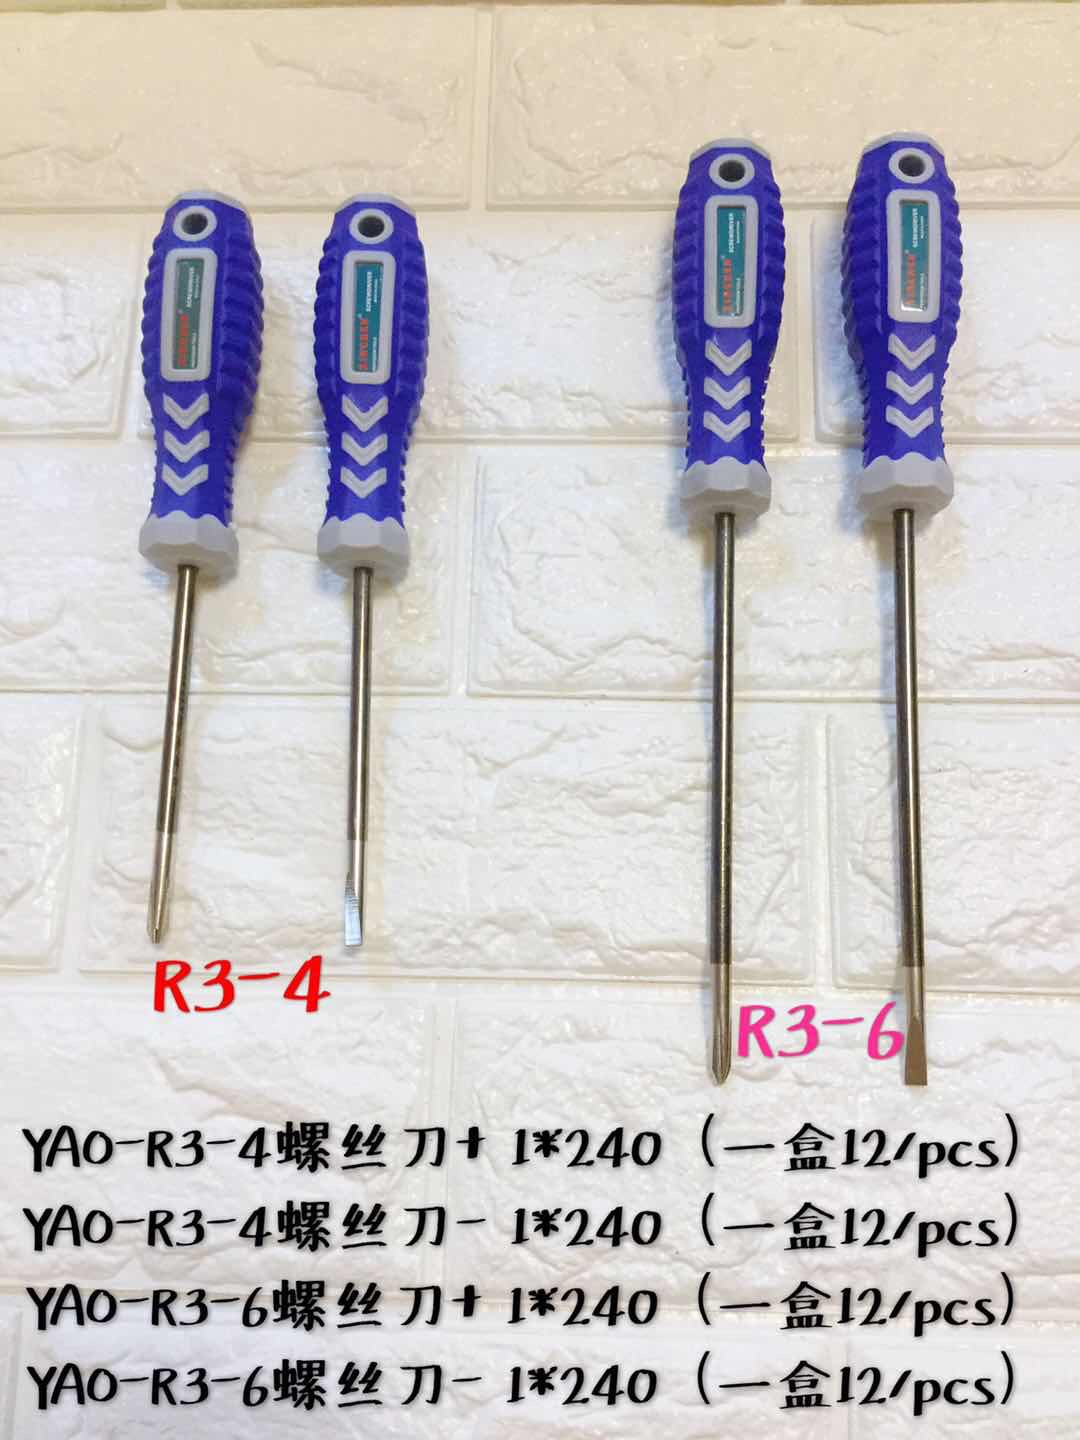 YAO-R3-4（十、一）、YAO-R3-6（十、一）螺丝刀